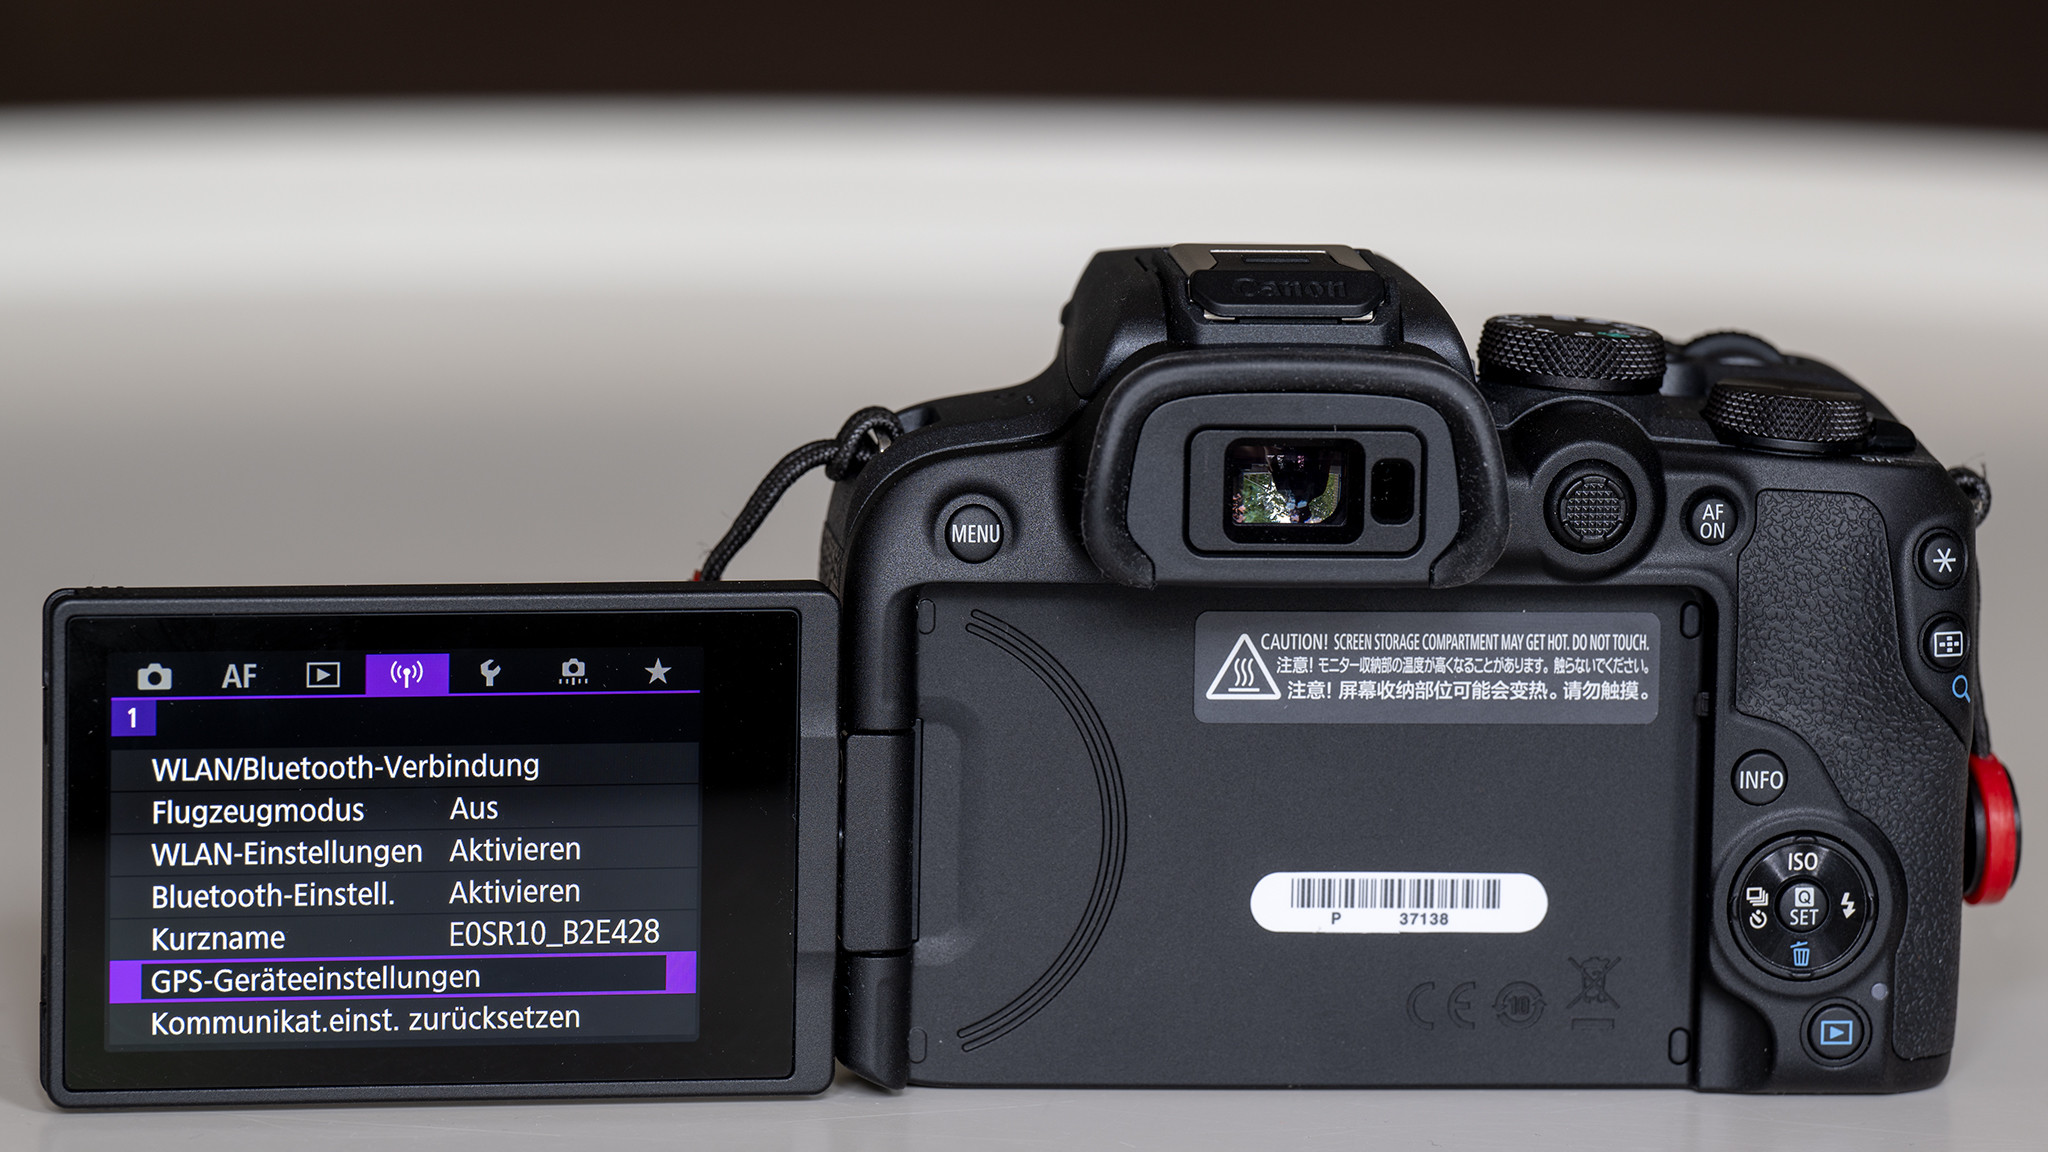 Canon EOS R10 im Test: Systemkamera zum Tiefpreis dank Cashback - COMPUTER  BILD